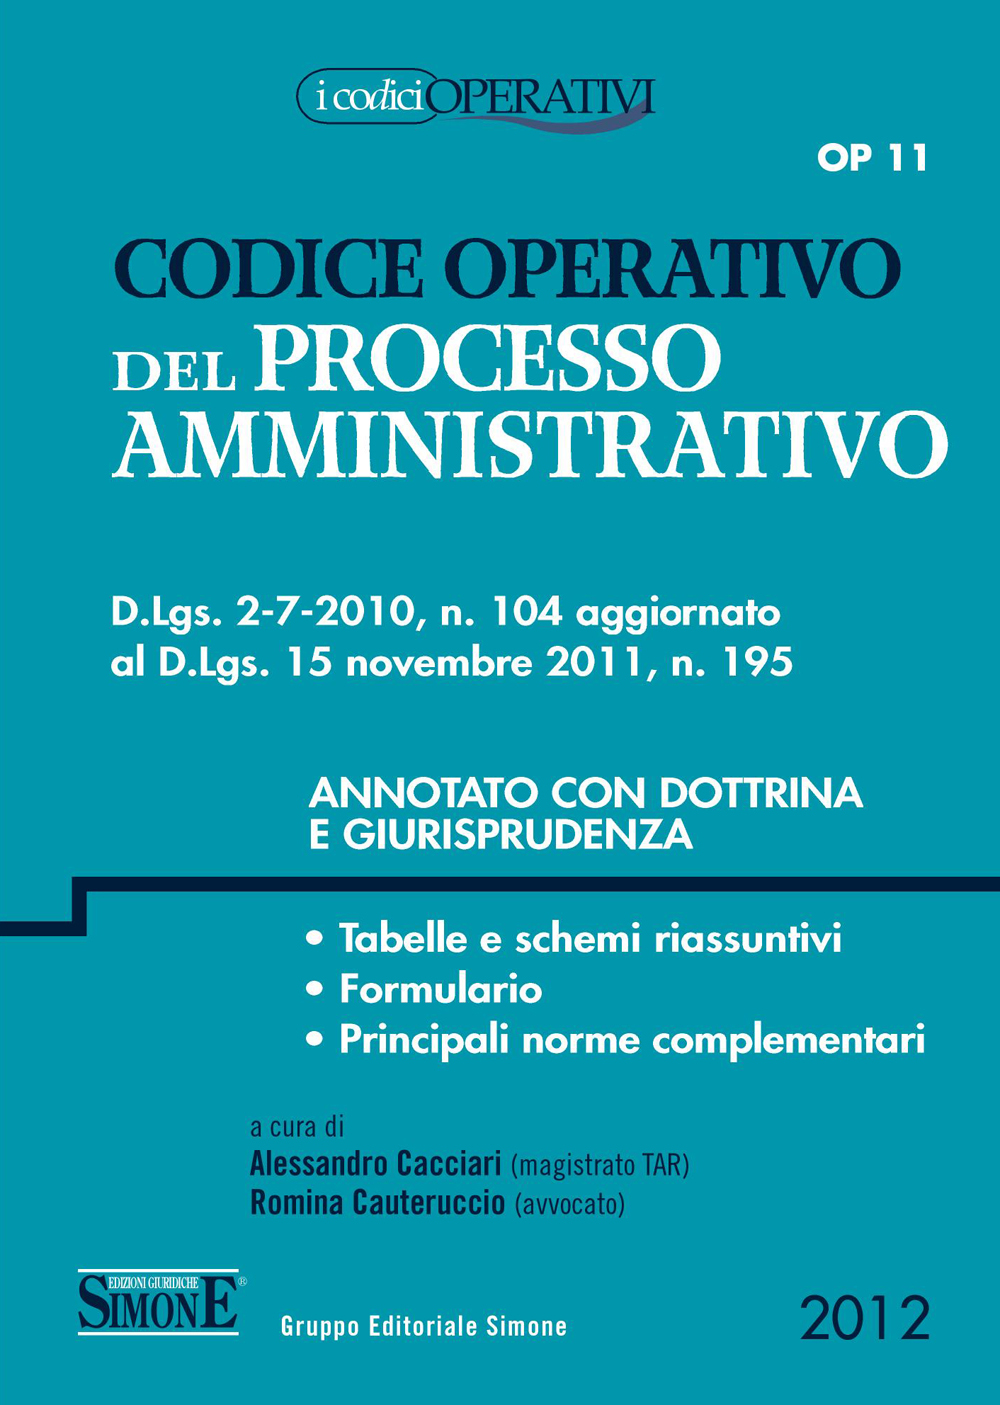 Codice Operativo del Processo Amministrativo - OP11